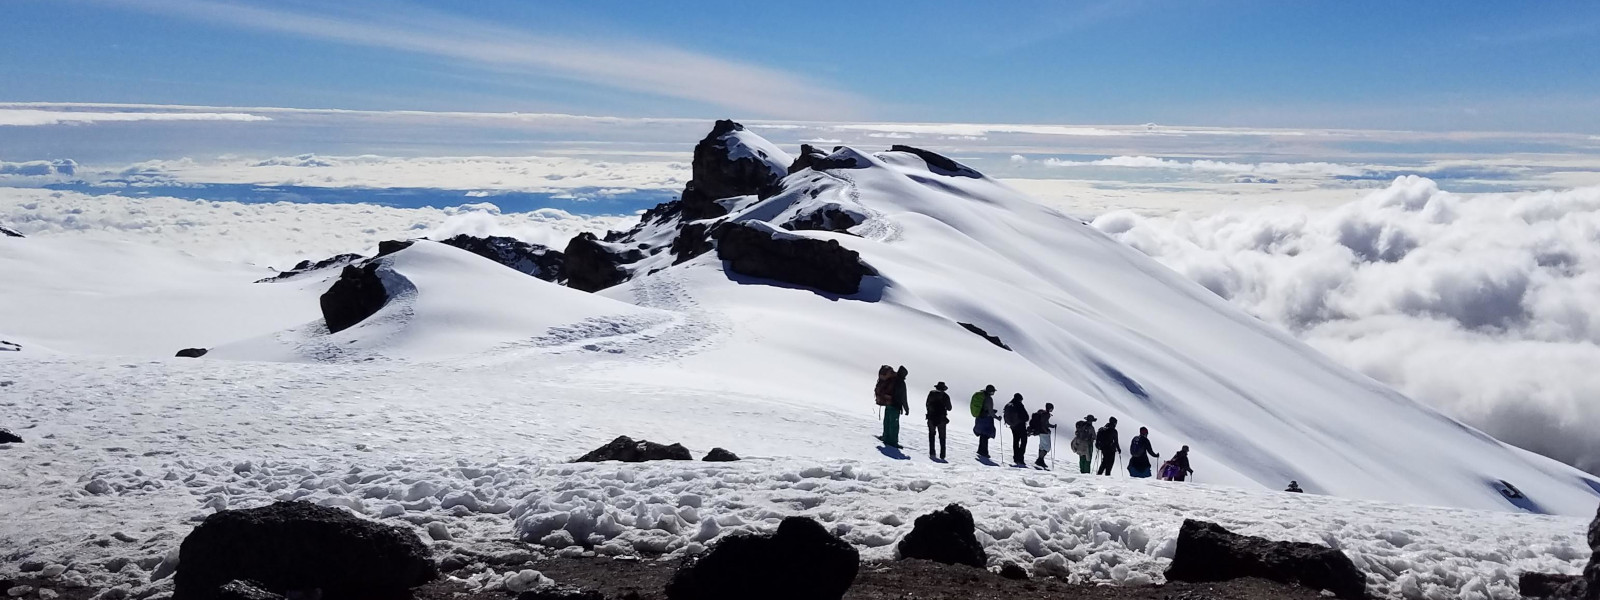 How Do I Prepare to Climb Kilimanjaro?